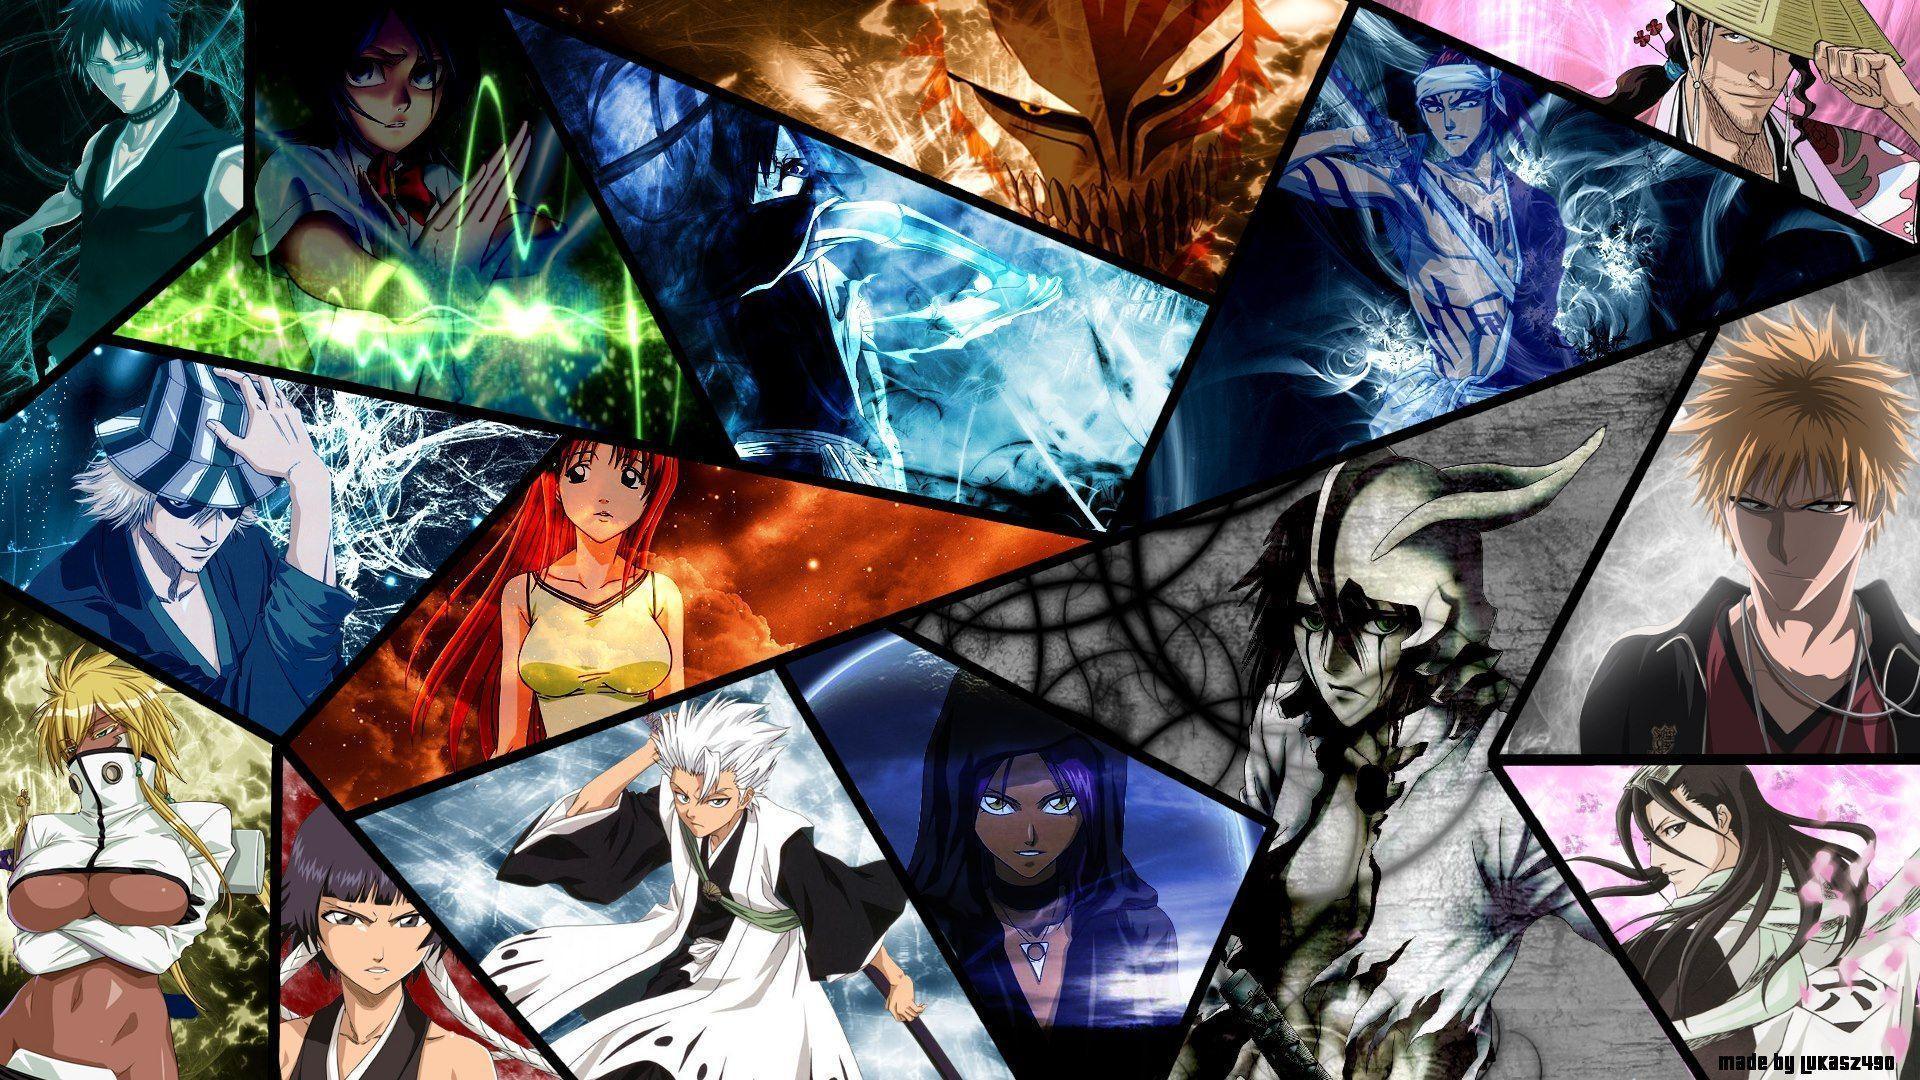 BLEACH WALLPAPERS Anime Wallpaper